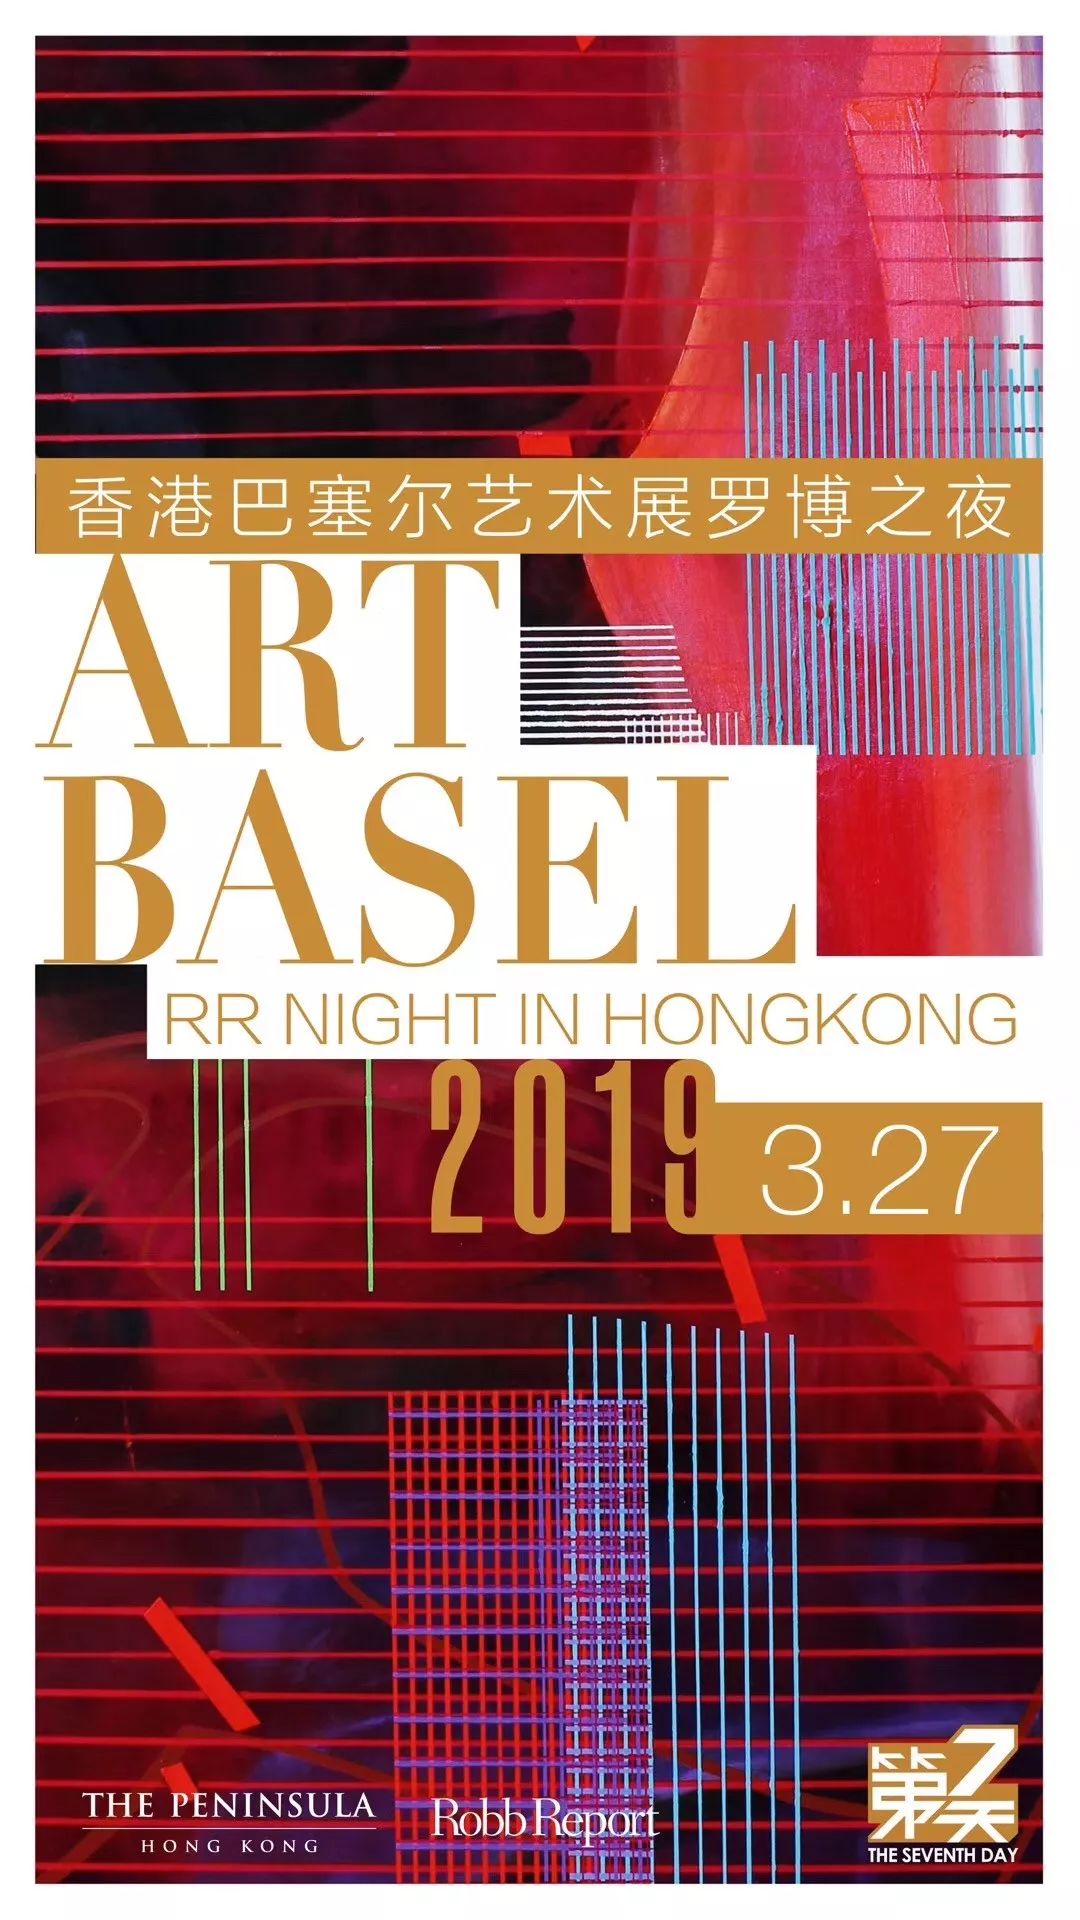 特别预告沿袭往年传统,今年的香港巴塞尔艺术展仍然由"艺廊荟萃","